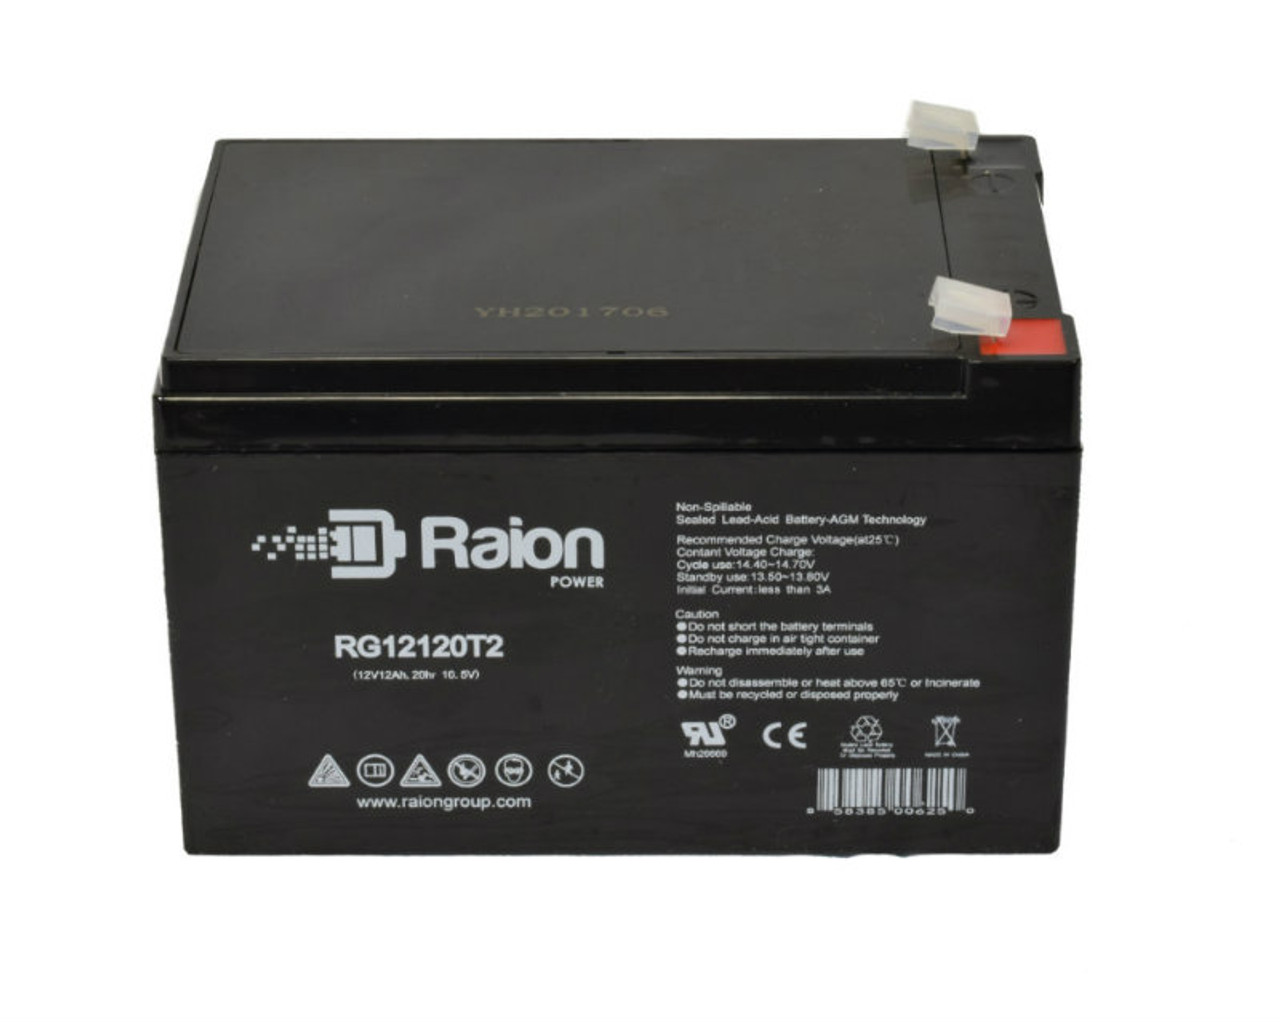 Raion Power RG12120T2 SLA Battery for Spinshot Plus-2